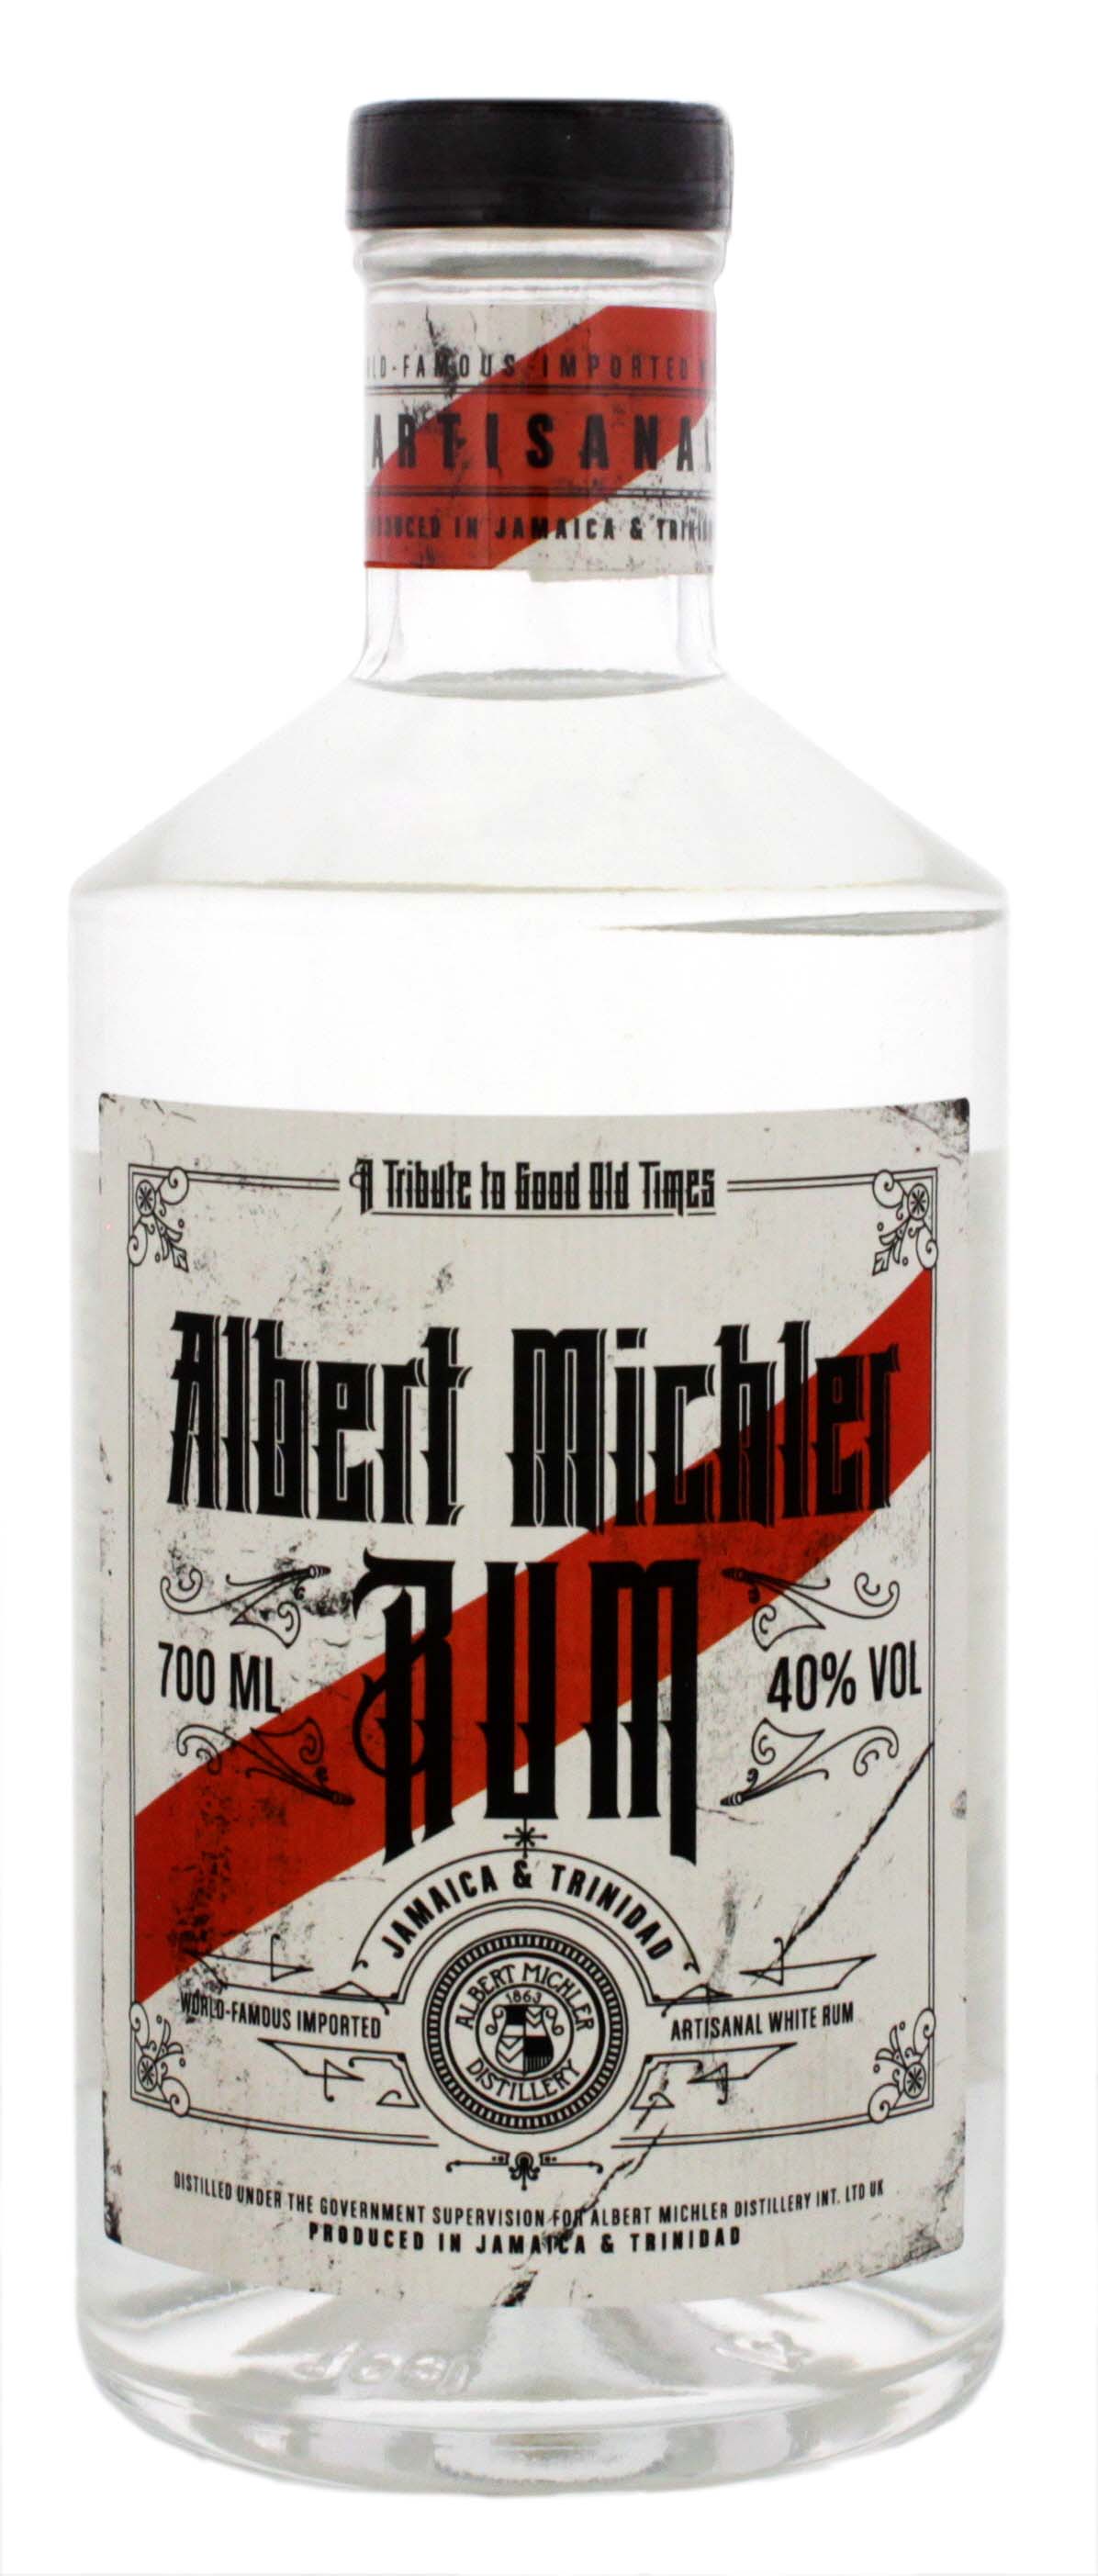 Michlers Jamaica & Trinidad Artisanal White Rum 0,7L